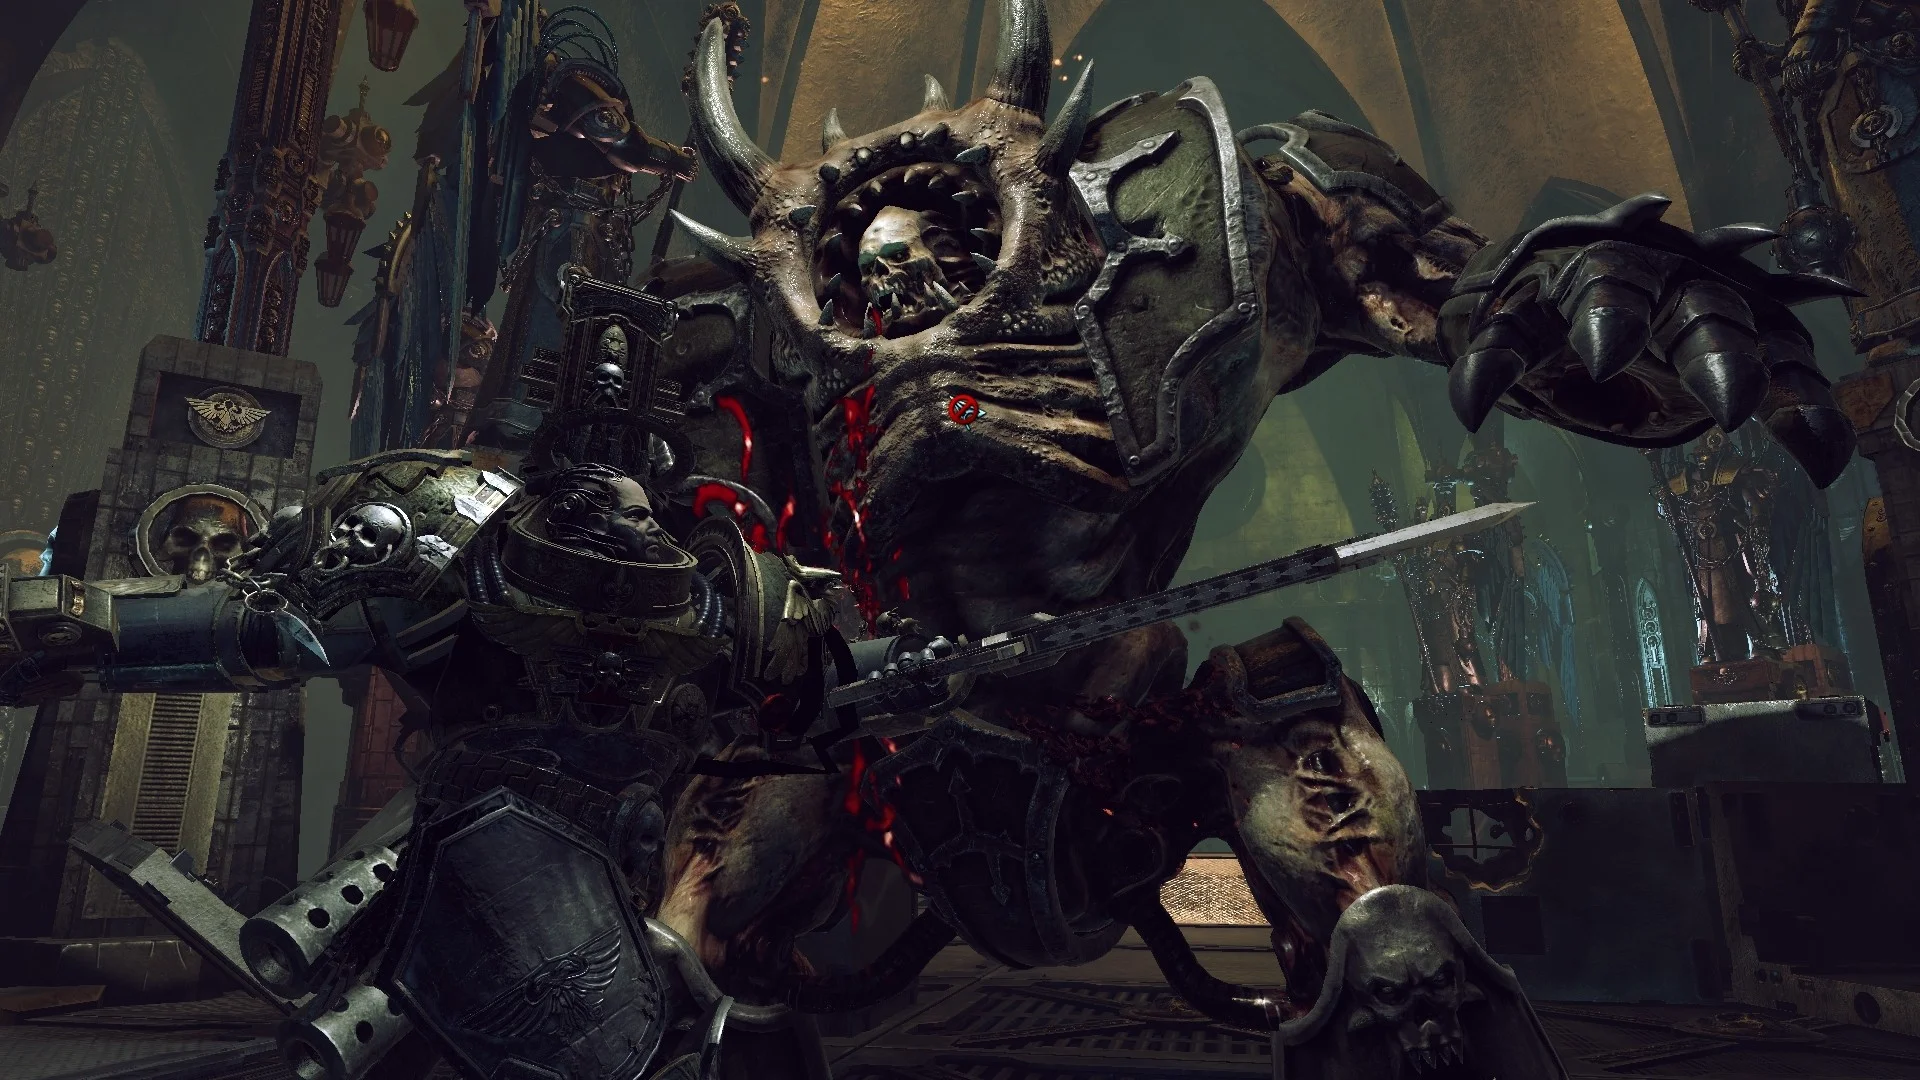 Превью Warhammer 40,000: Inquisitor — Martyr. Святая инквизиция! - изображение обложка